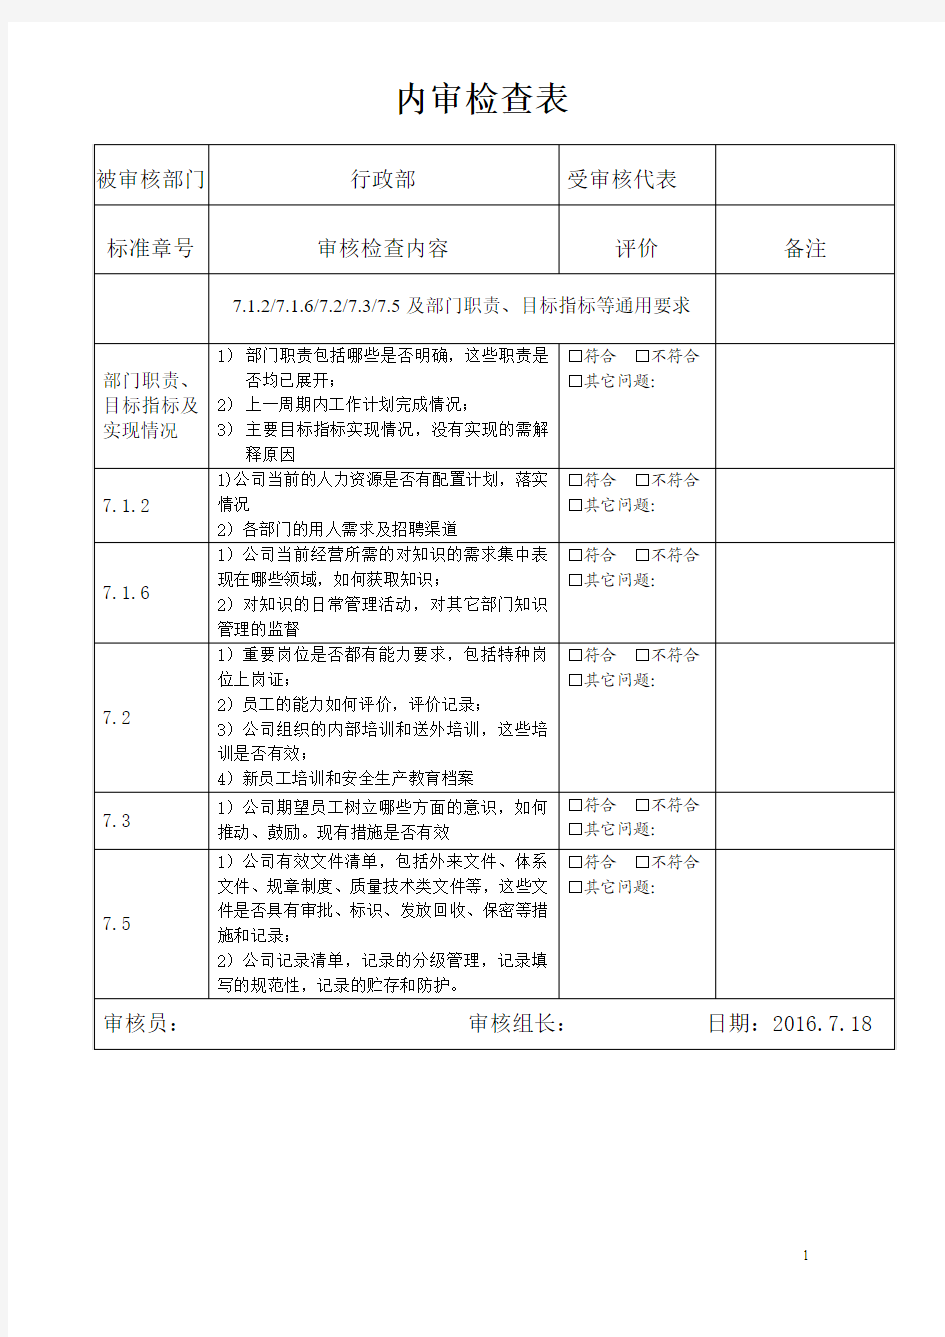 ISO2015版行政部内审检查表